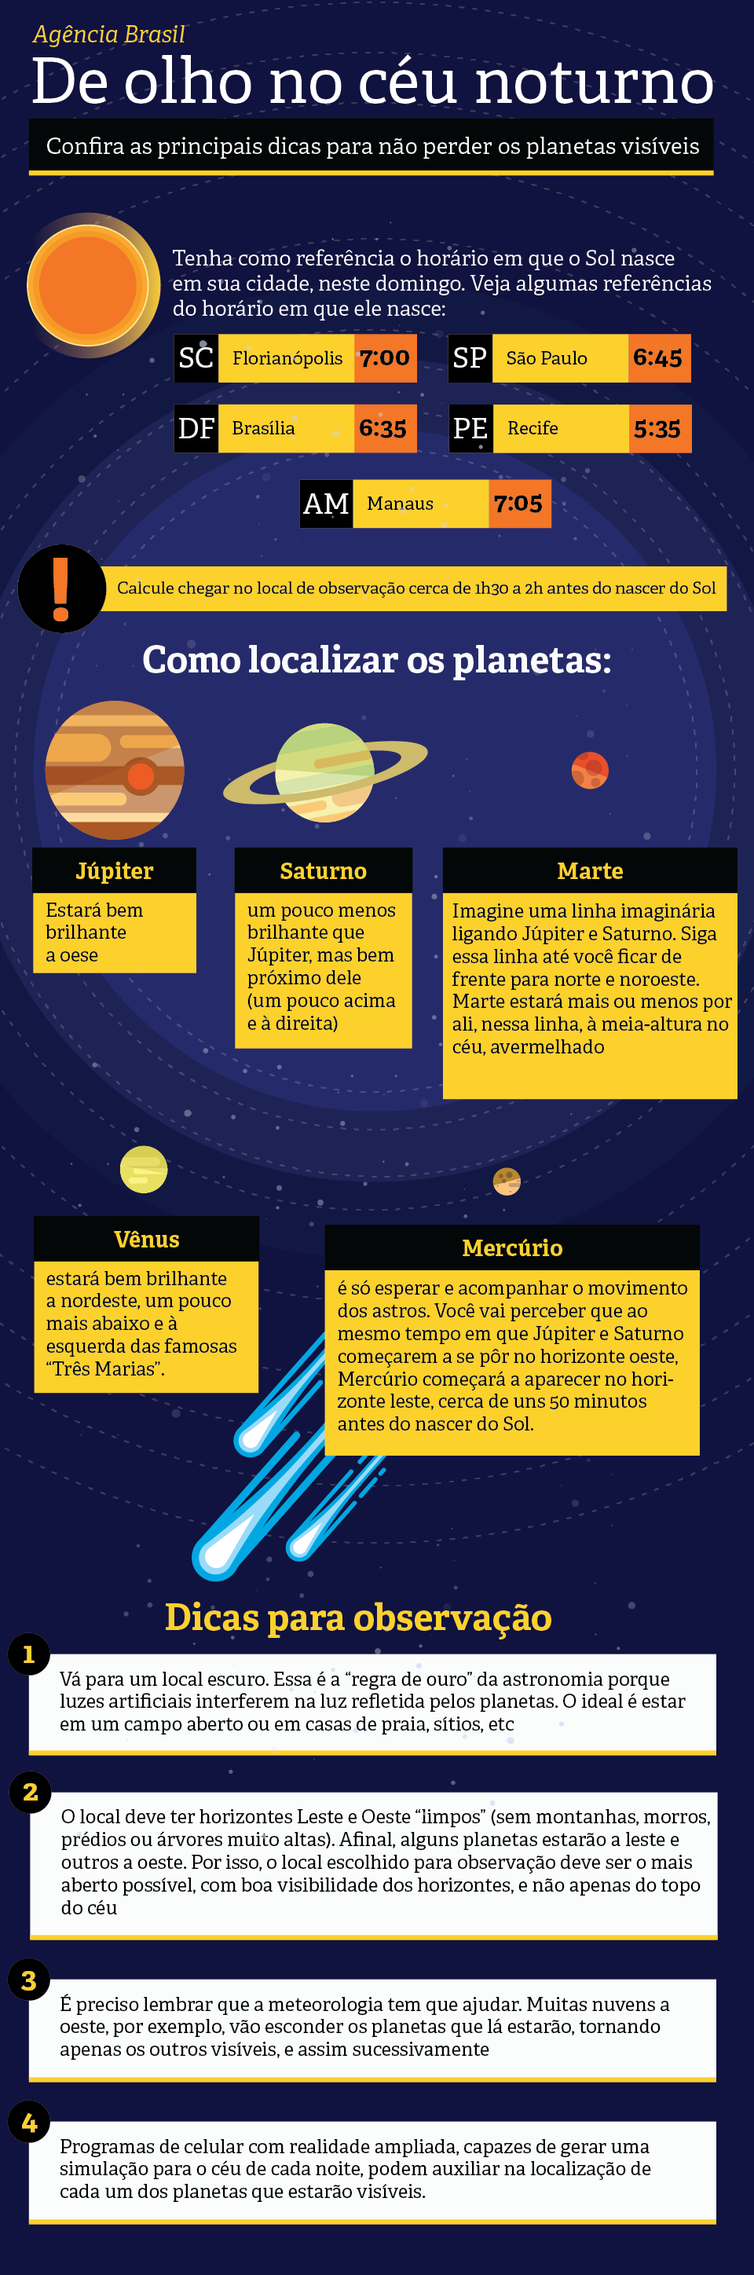 Infográfico mostra como ver 5 planetas no céu da madrugada neste domingo (26).